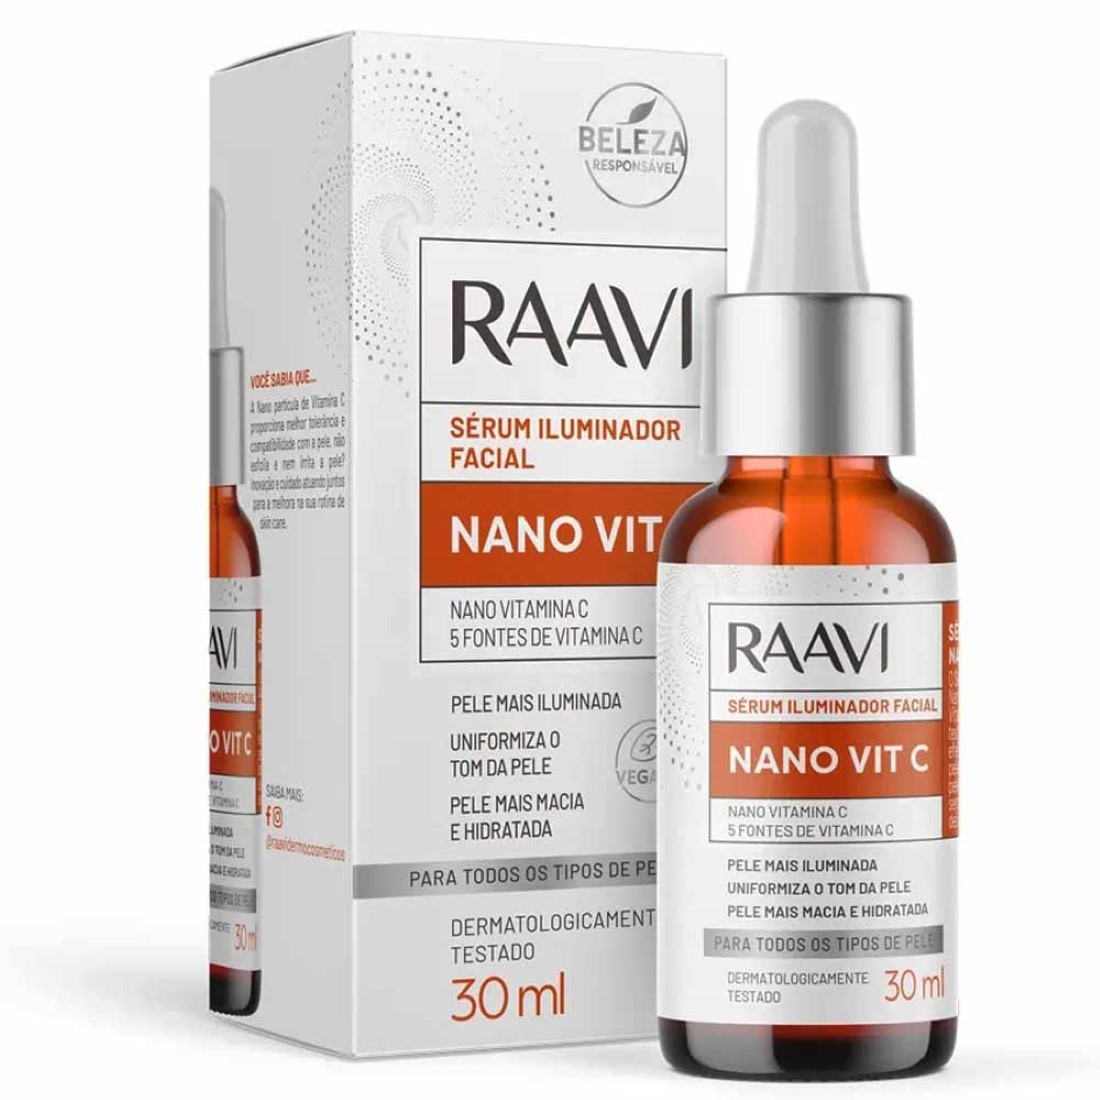 Sérum Iluminador Facial Nano Vit C 30ml - Raavi